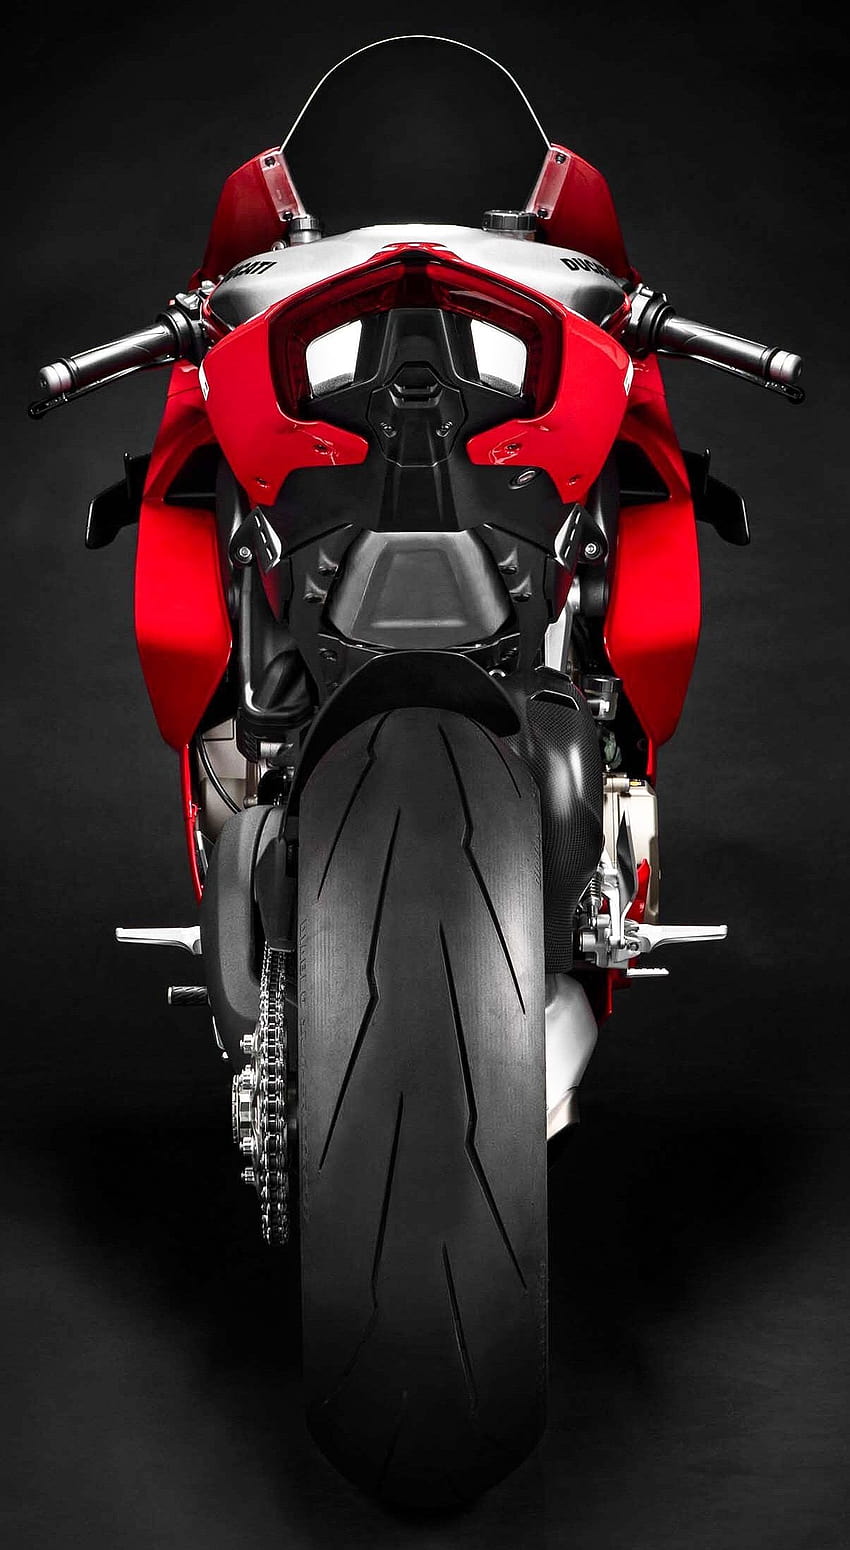 2019 Ducati Panigale V4 S Corse hd-wallpapers, ducati wallpapers, bikes  wallpapers, 4k-wallpapers | Ducati panigale, Ducati, Panigale